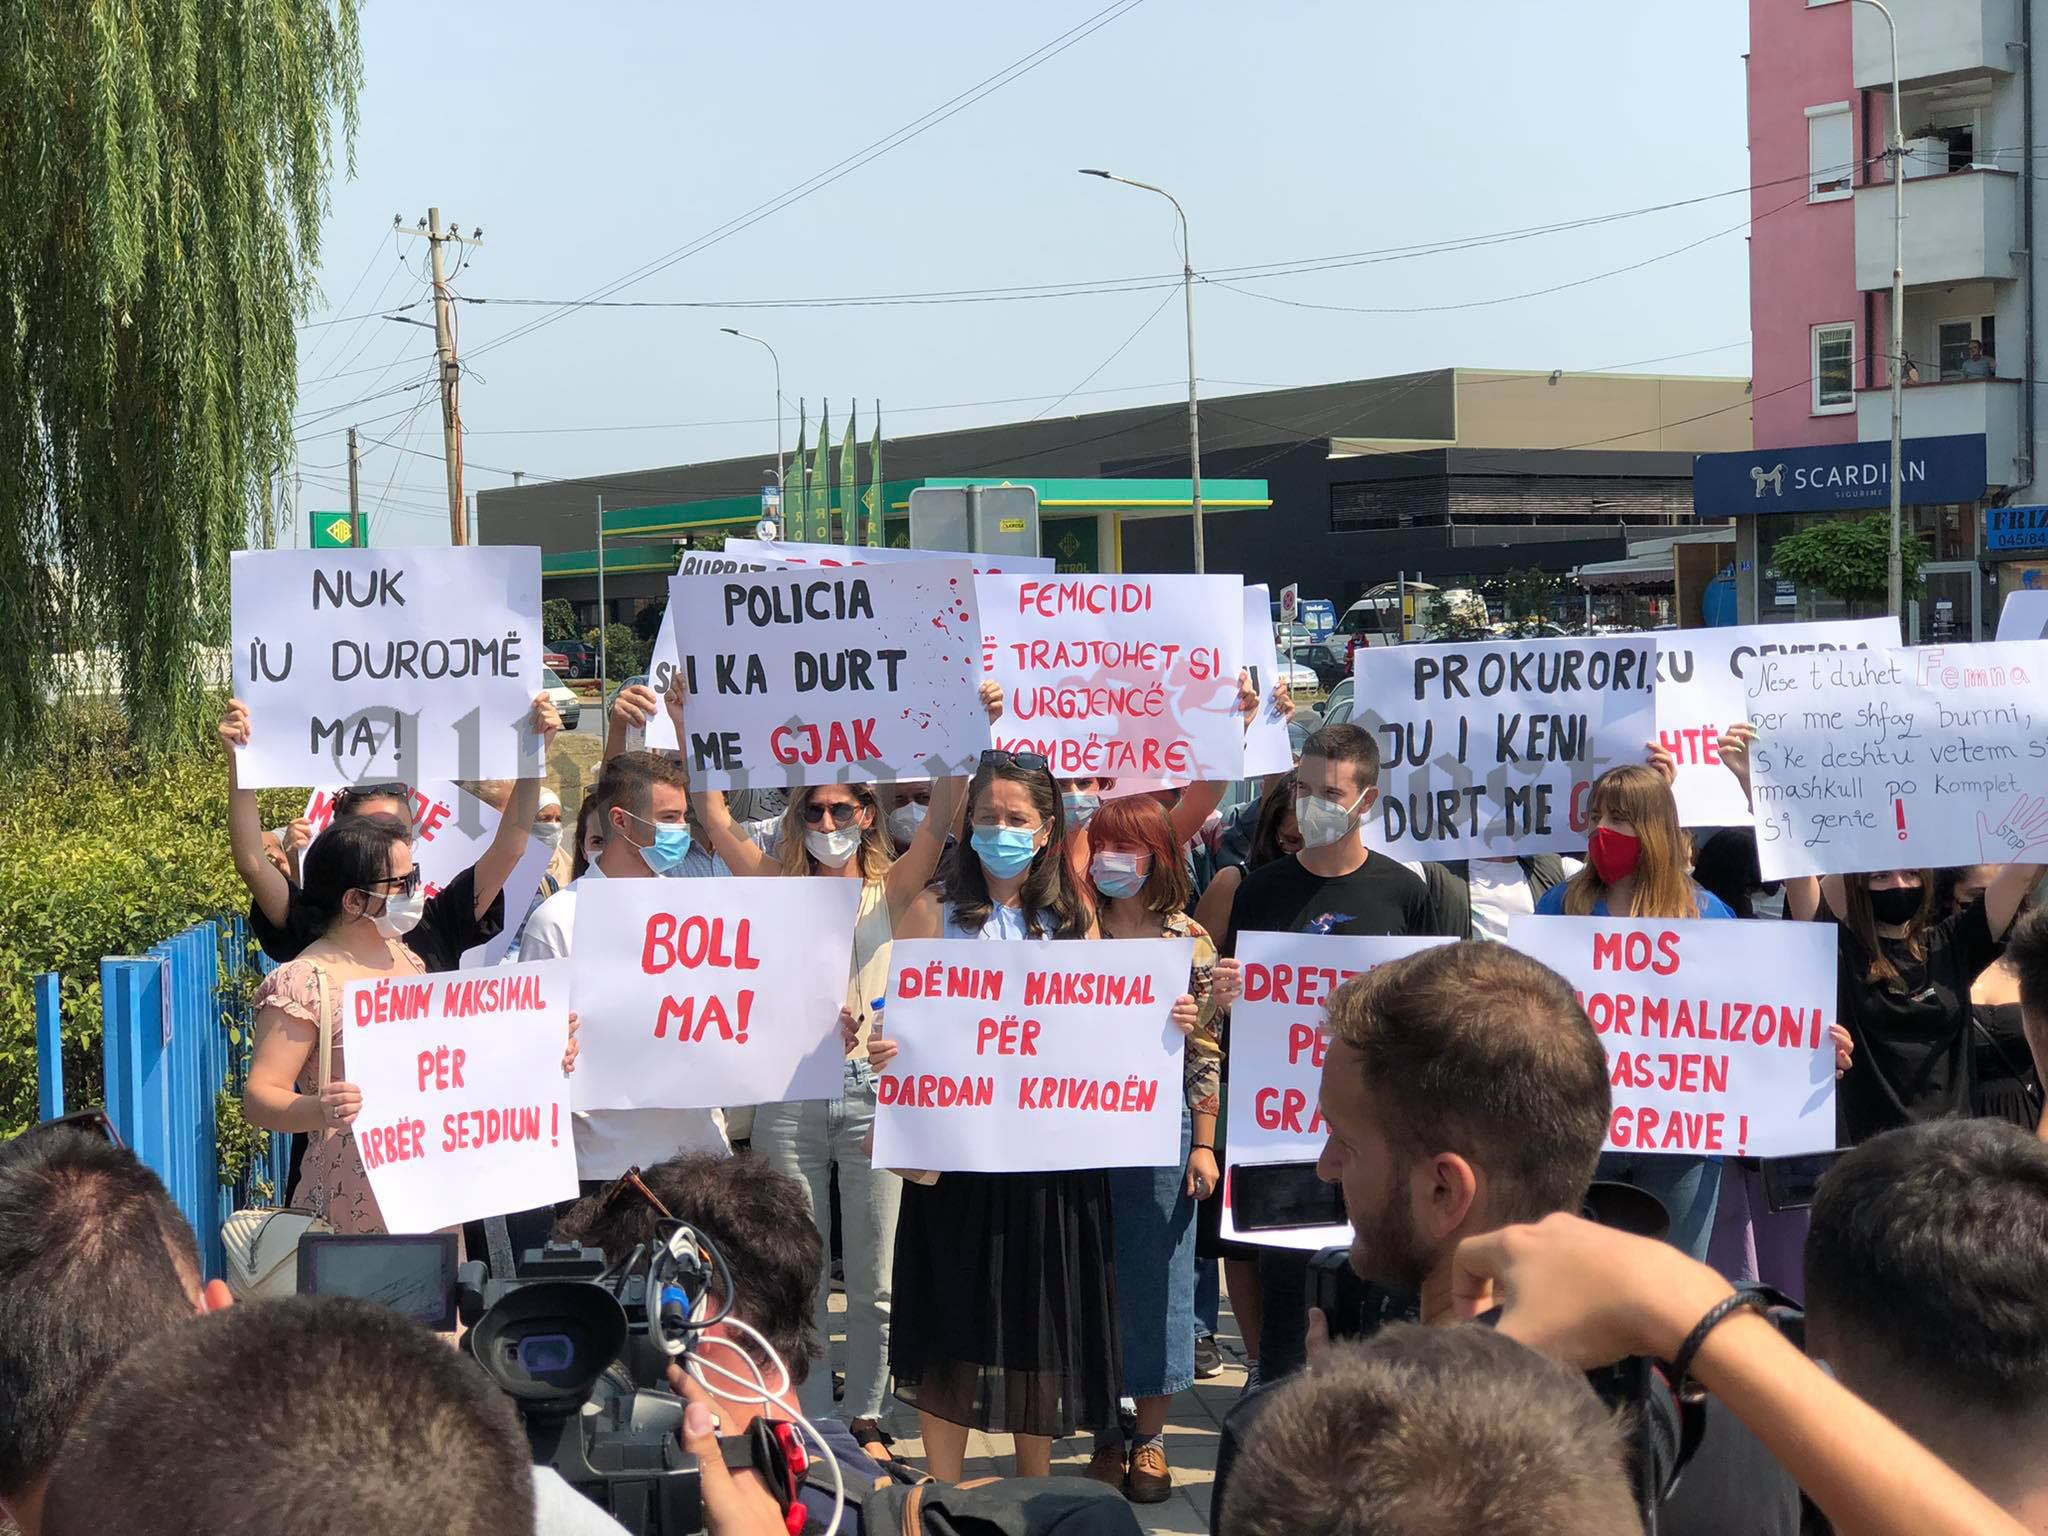 QKSGj: Organizon marsh me kërkesë që të trajtohet femicidi si urgjencë  kombëtare | Albanian Post